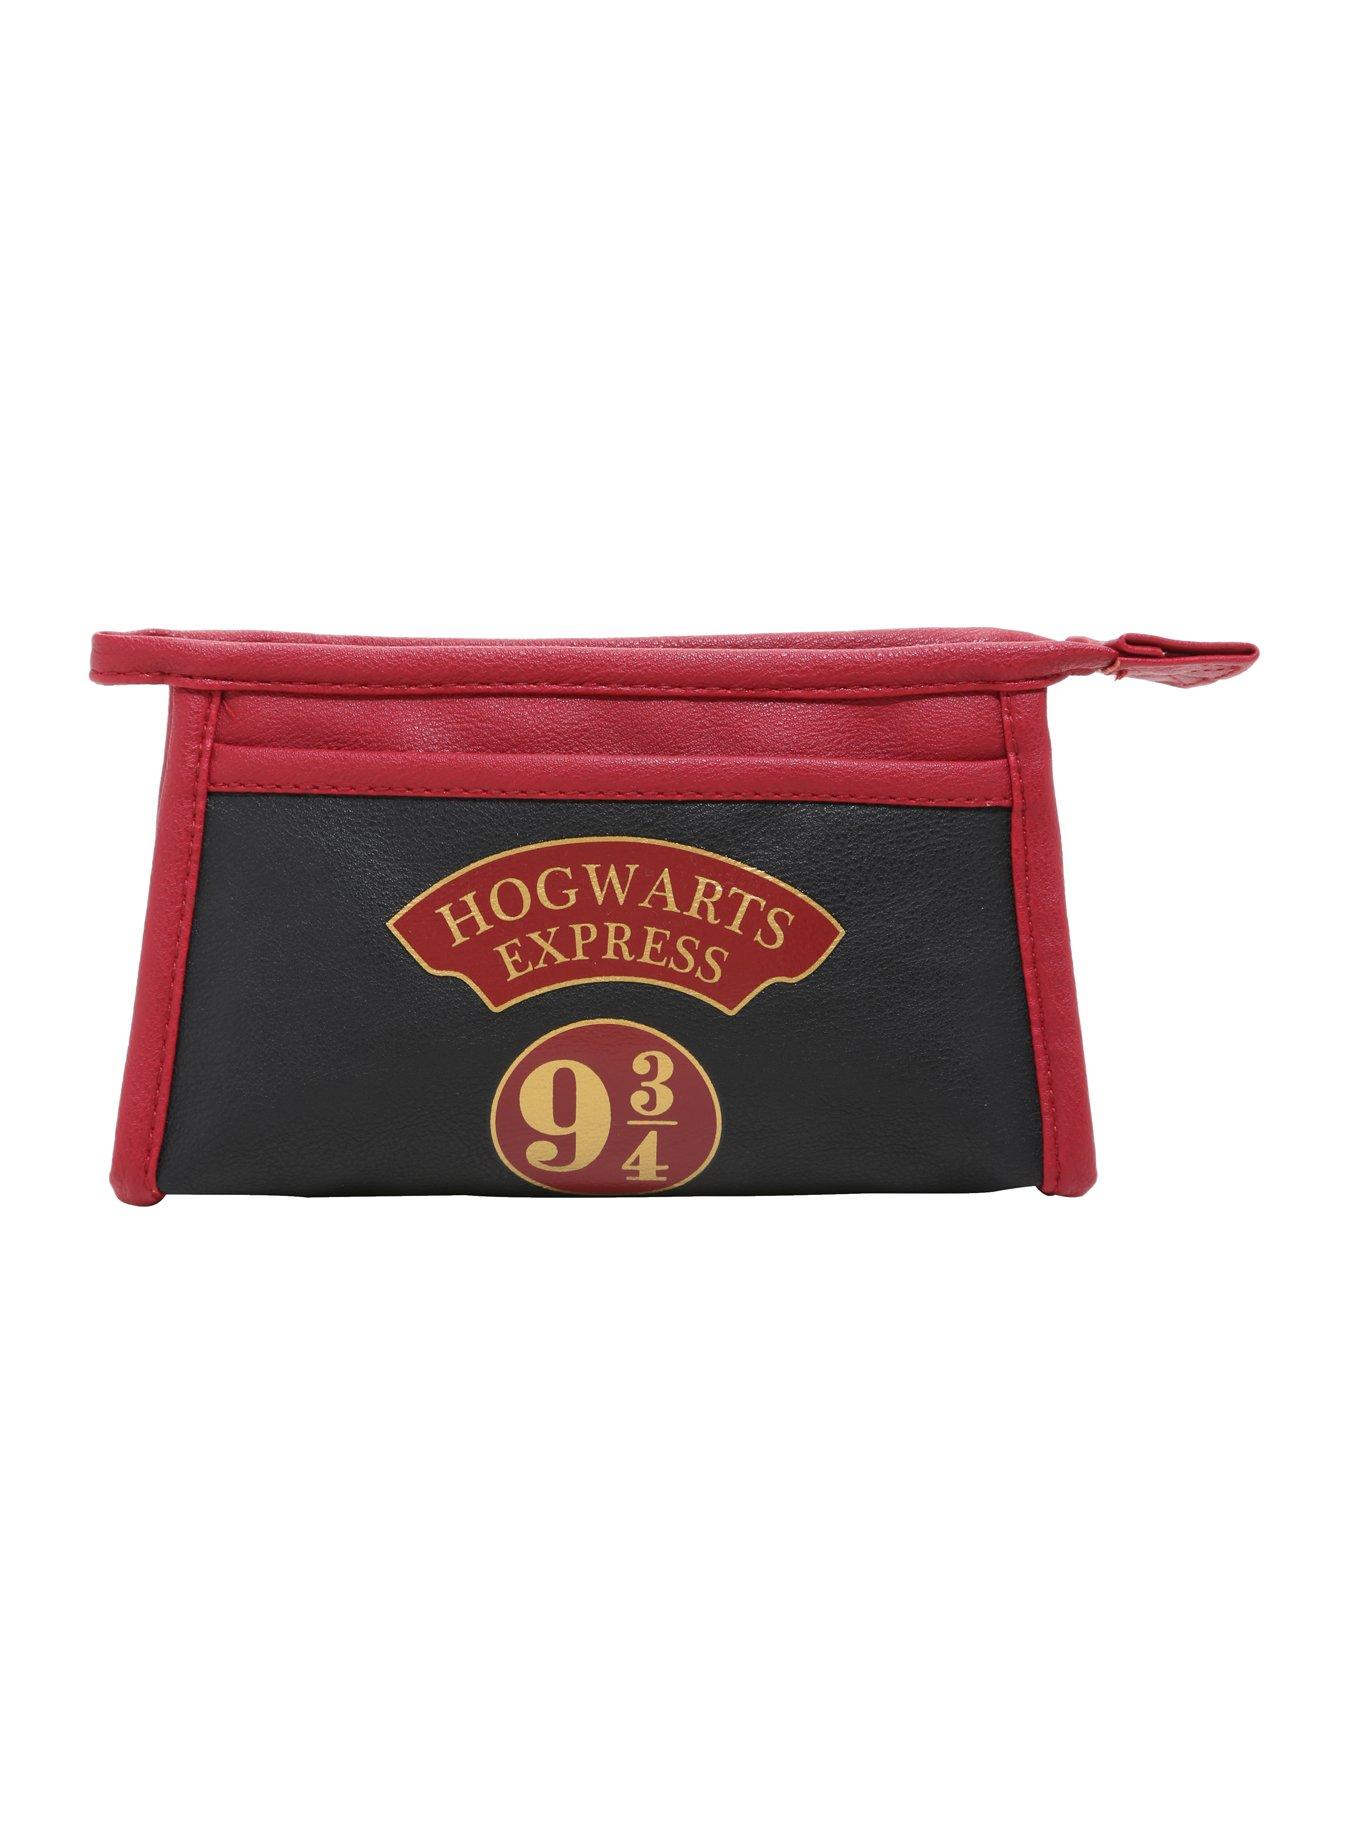 Harry Potter Hogwarts Express 9 3/4 Makeup Bag | Hot Topic